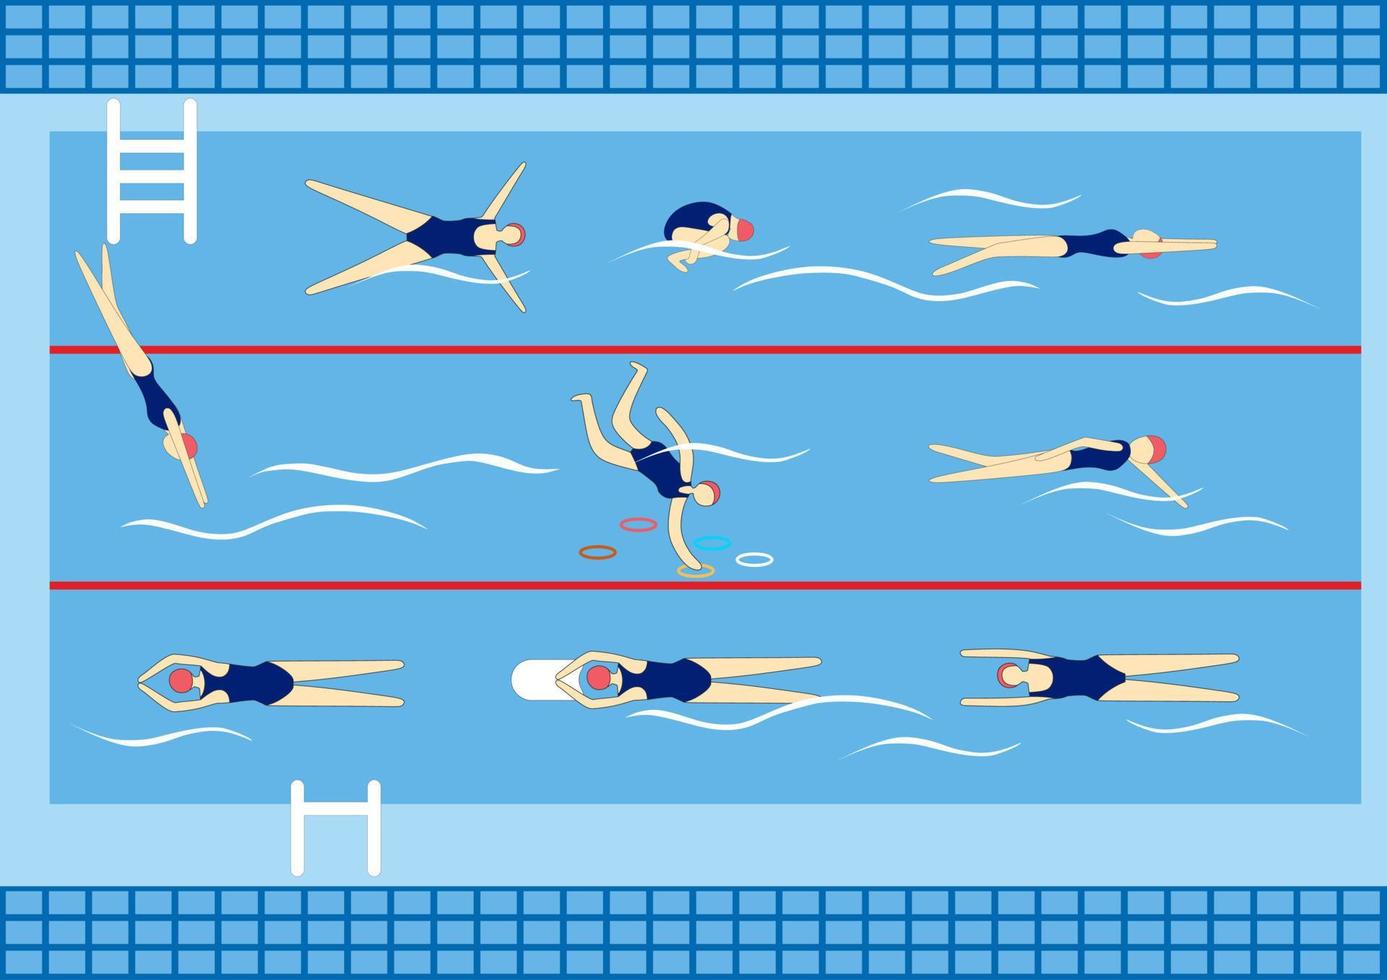 zwemmers in zwemmen zwembad. sport professioneel zwemmen zwembad met rijstroken. mensen zwemmen in openbaar zwemmen zwembad vector illustratie set.